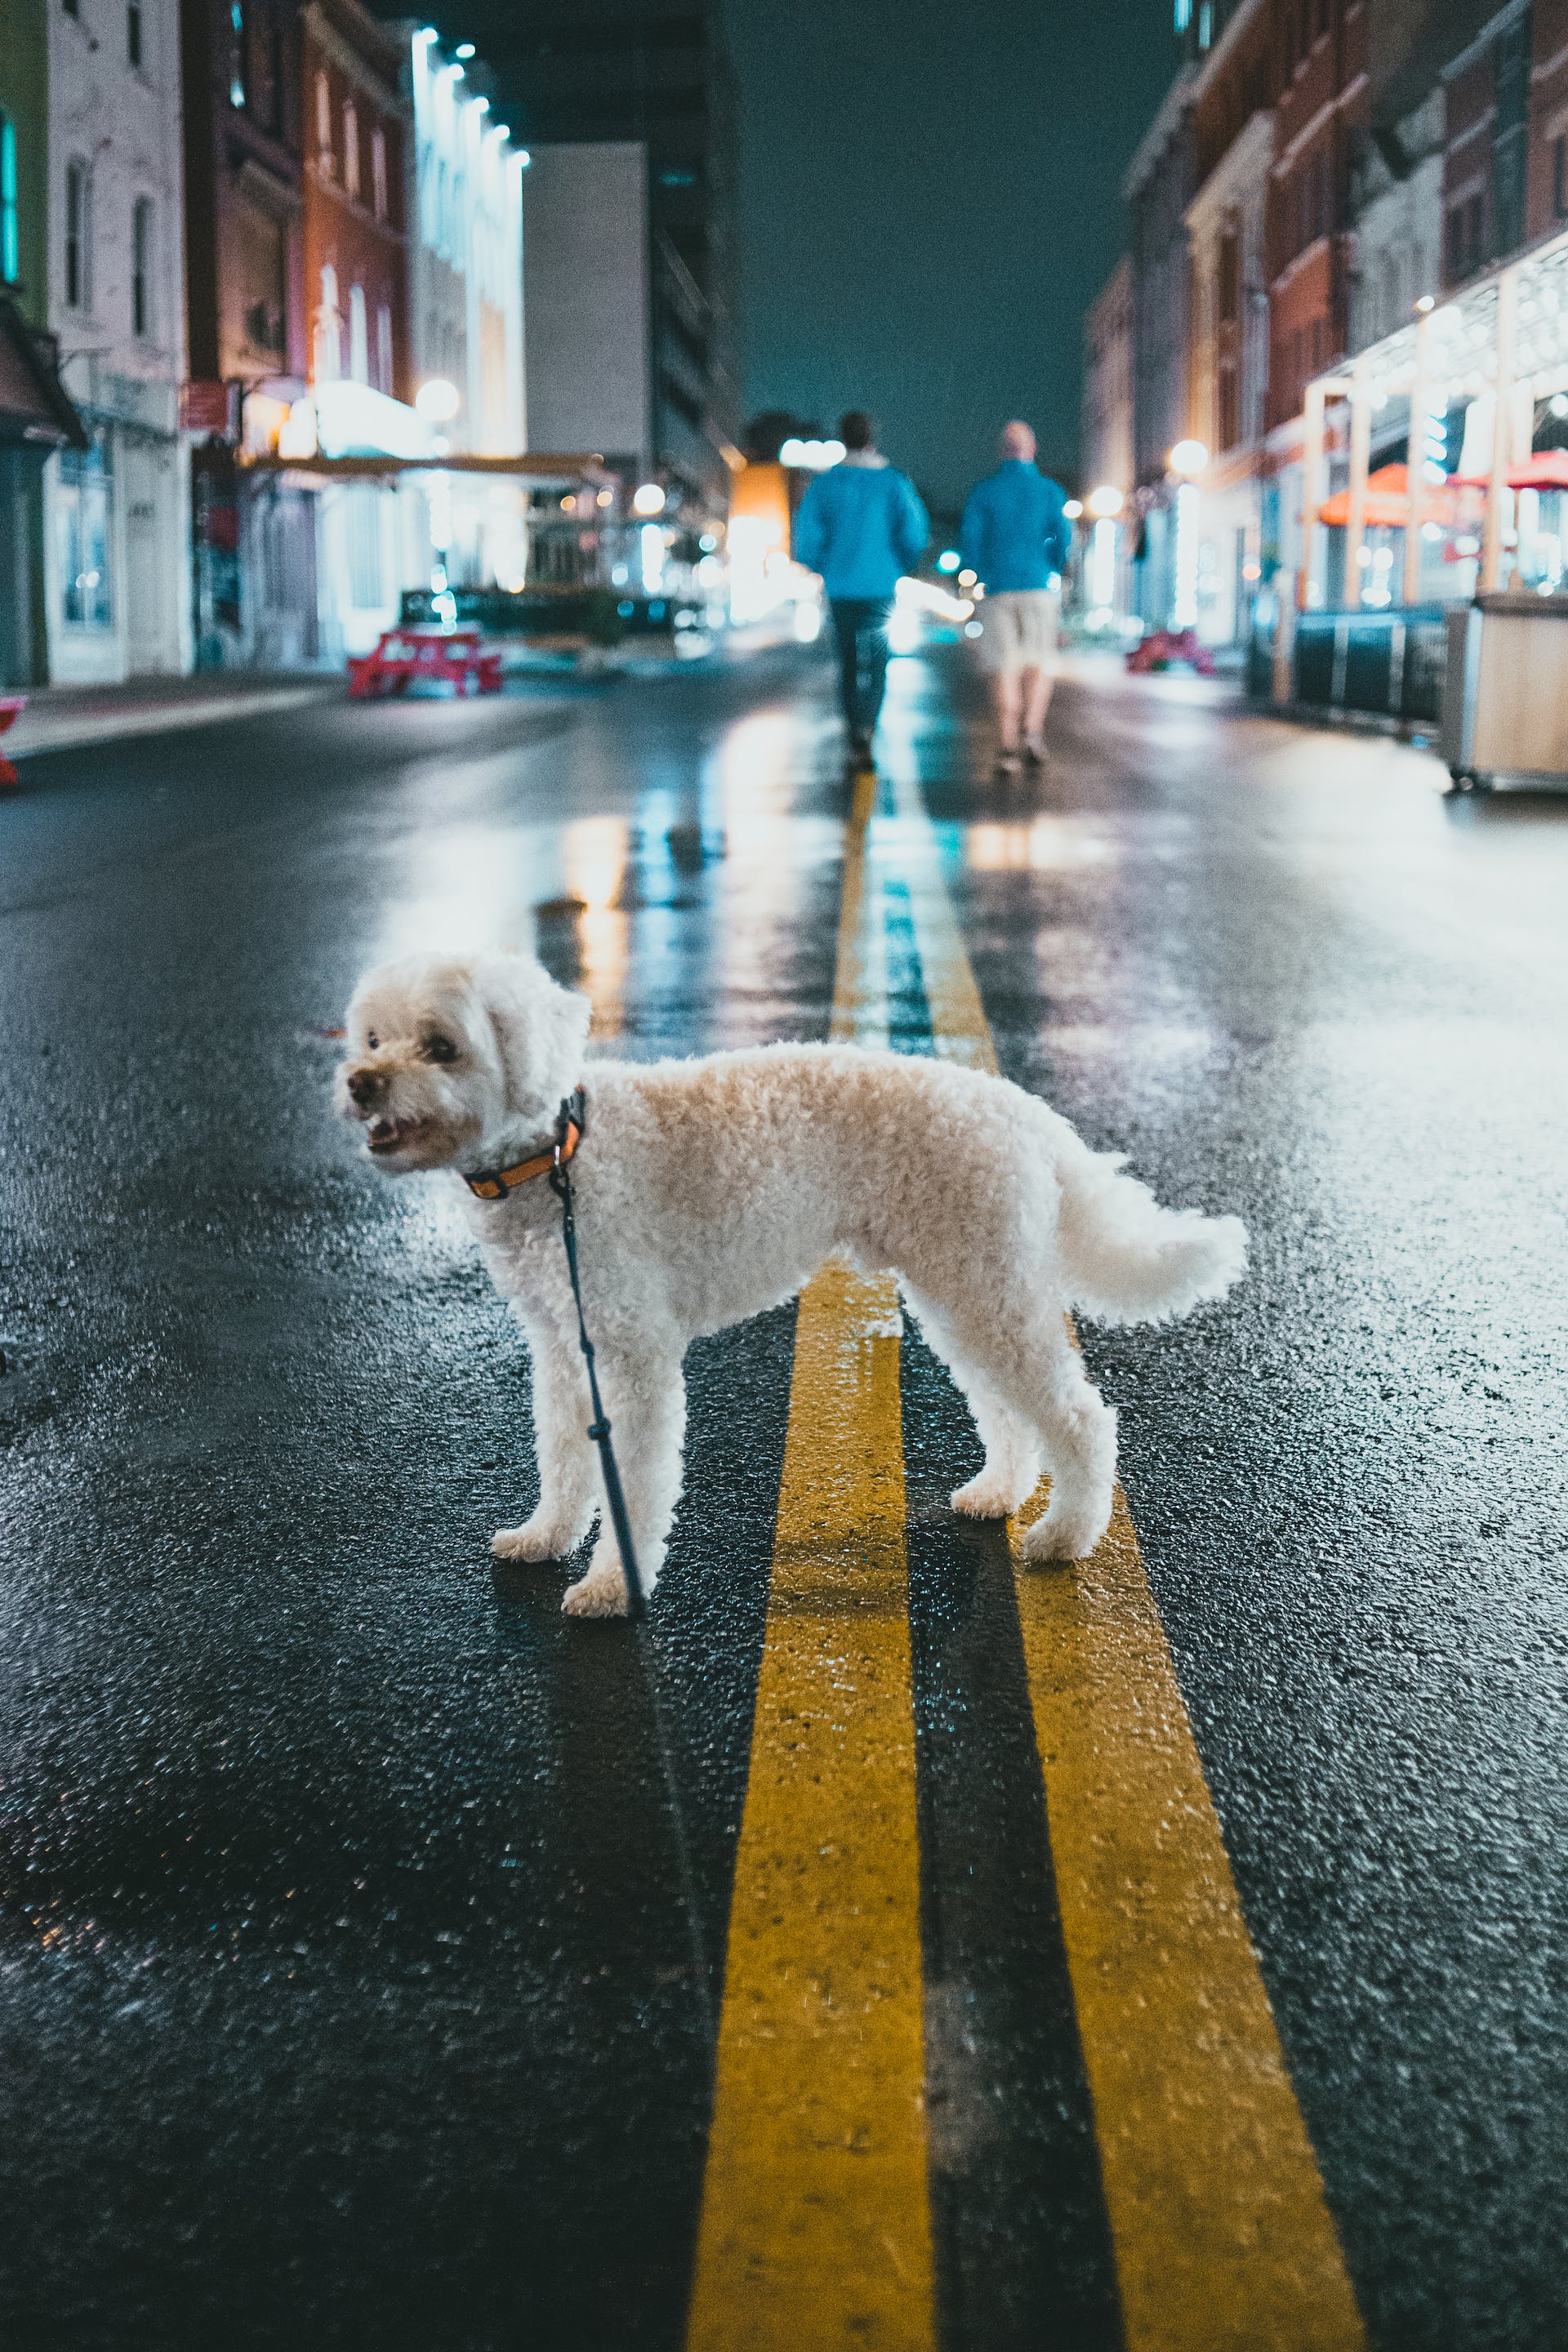 Weißer Pudel steht mitten auf einer Straße | Quelle: Pexels